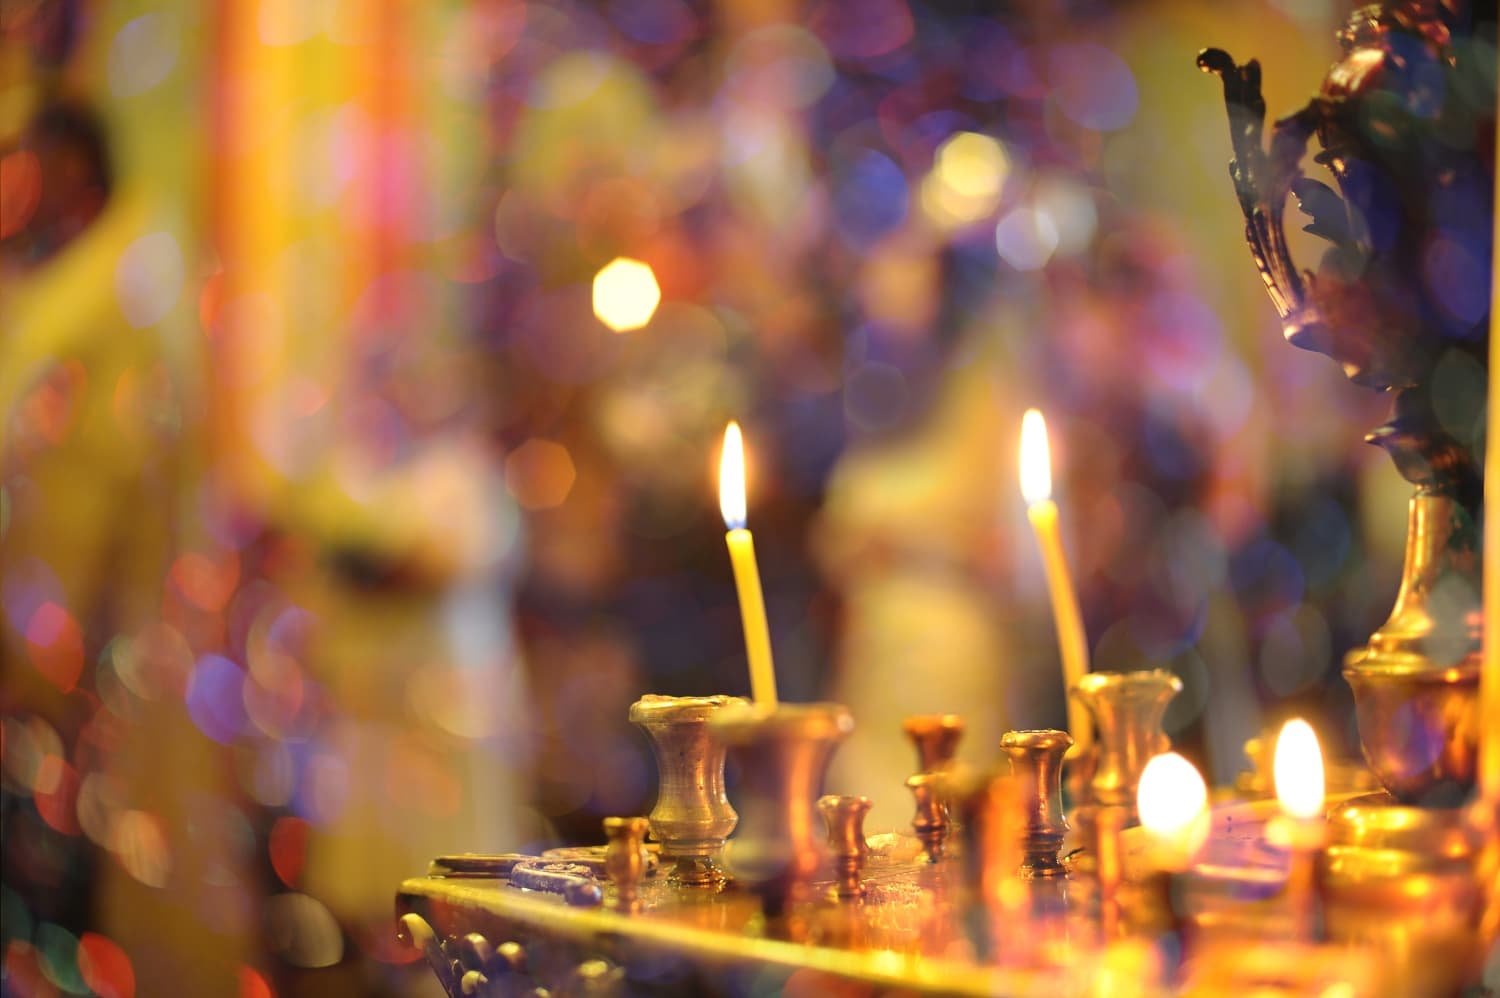 Mit jelent karácsonykor az égő gyertya? Spirituális ünnepi jelképek